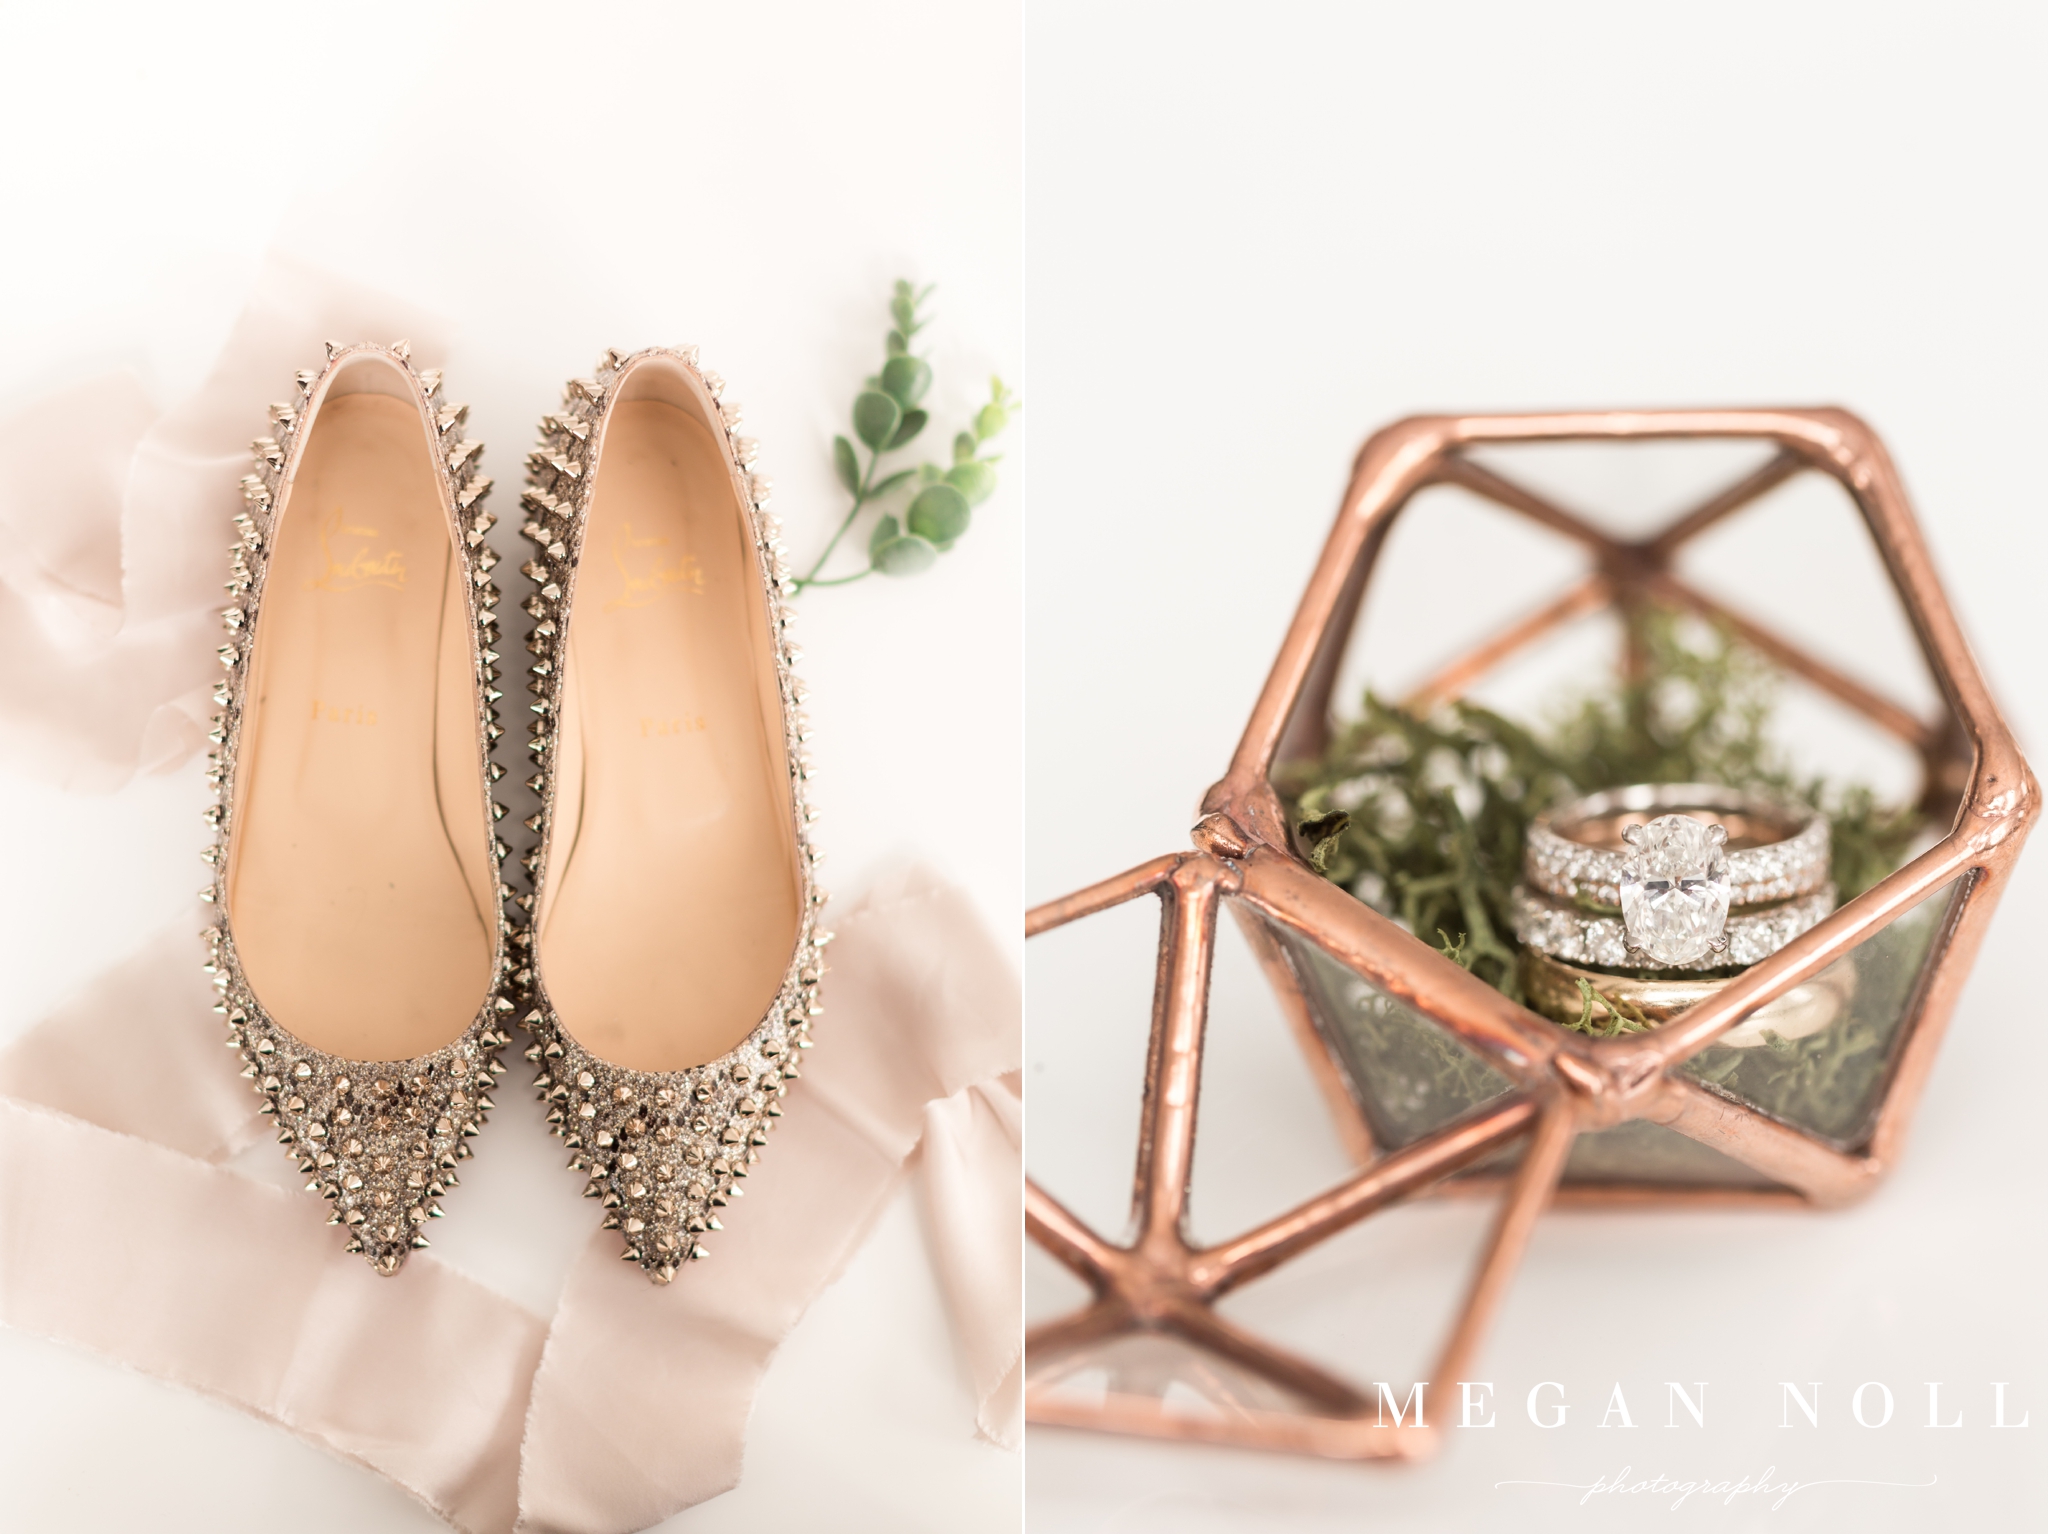 Wedding Ring, Ring Box, Louboutin Wedding Shoes